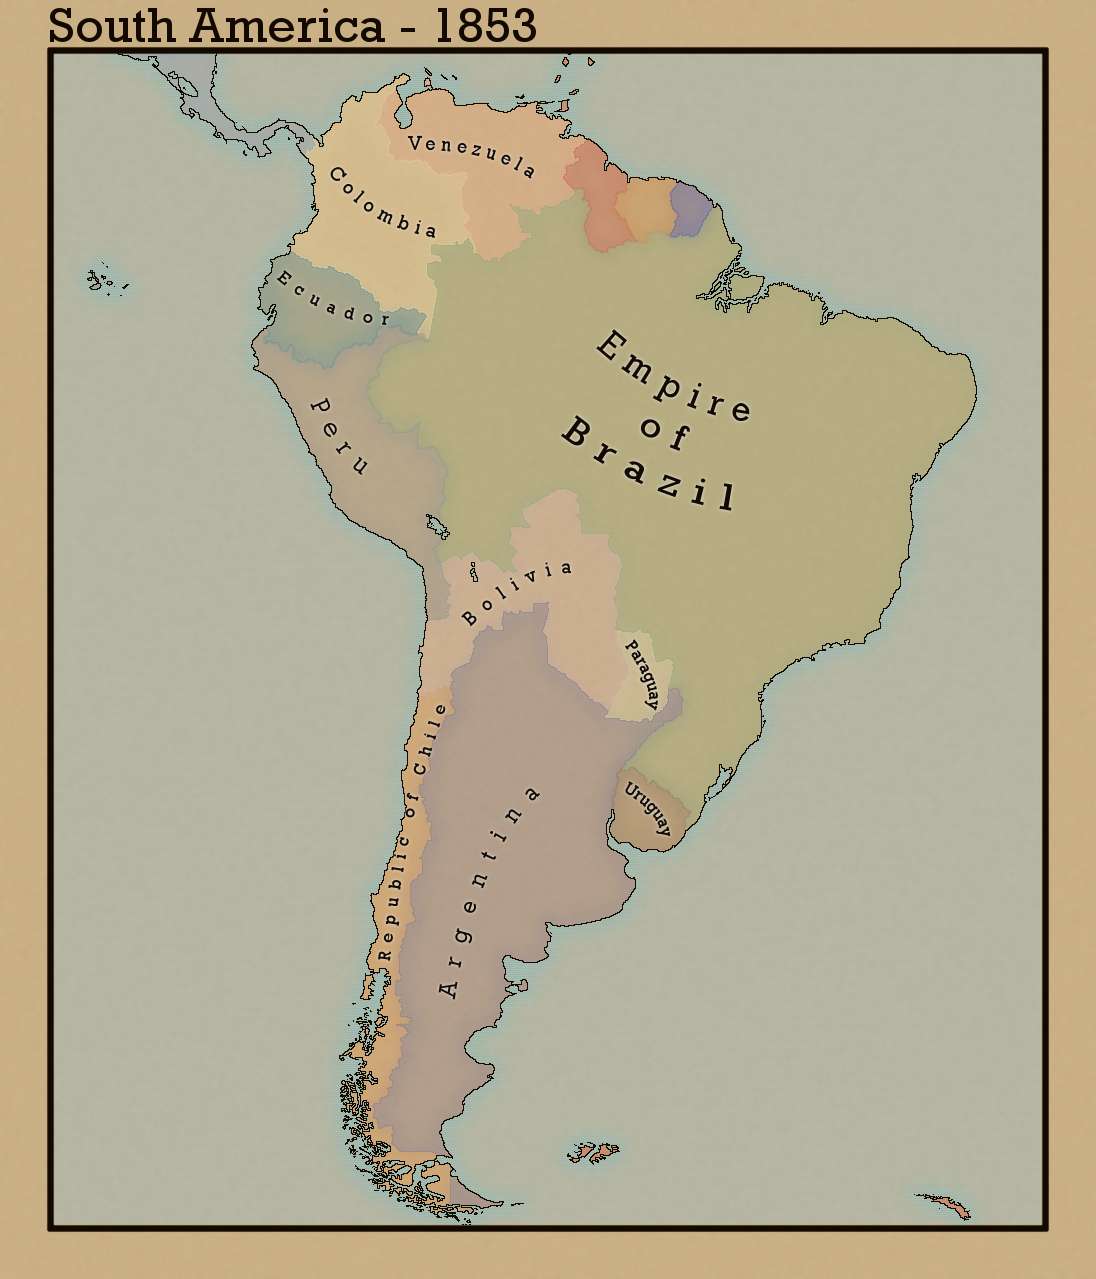 southamerica1853.jpg